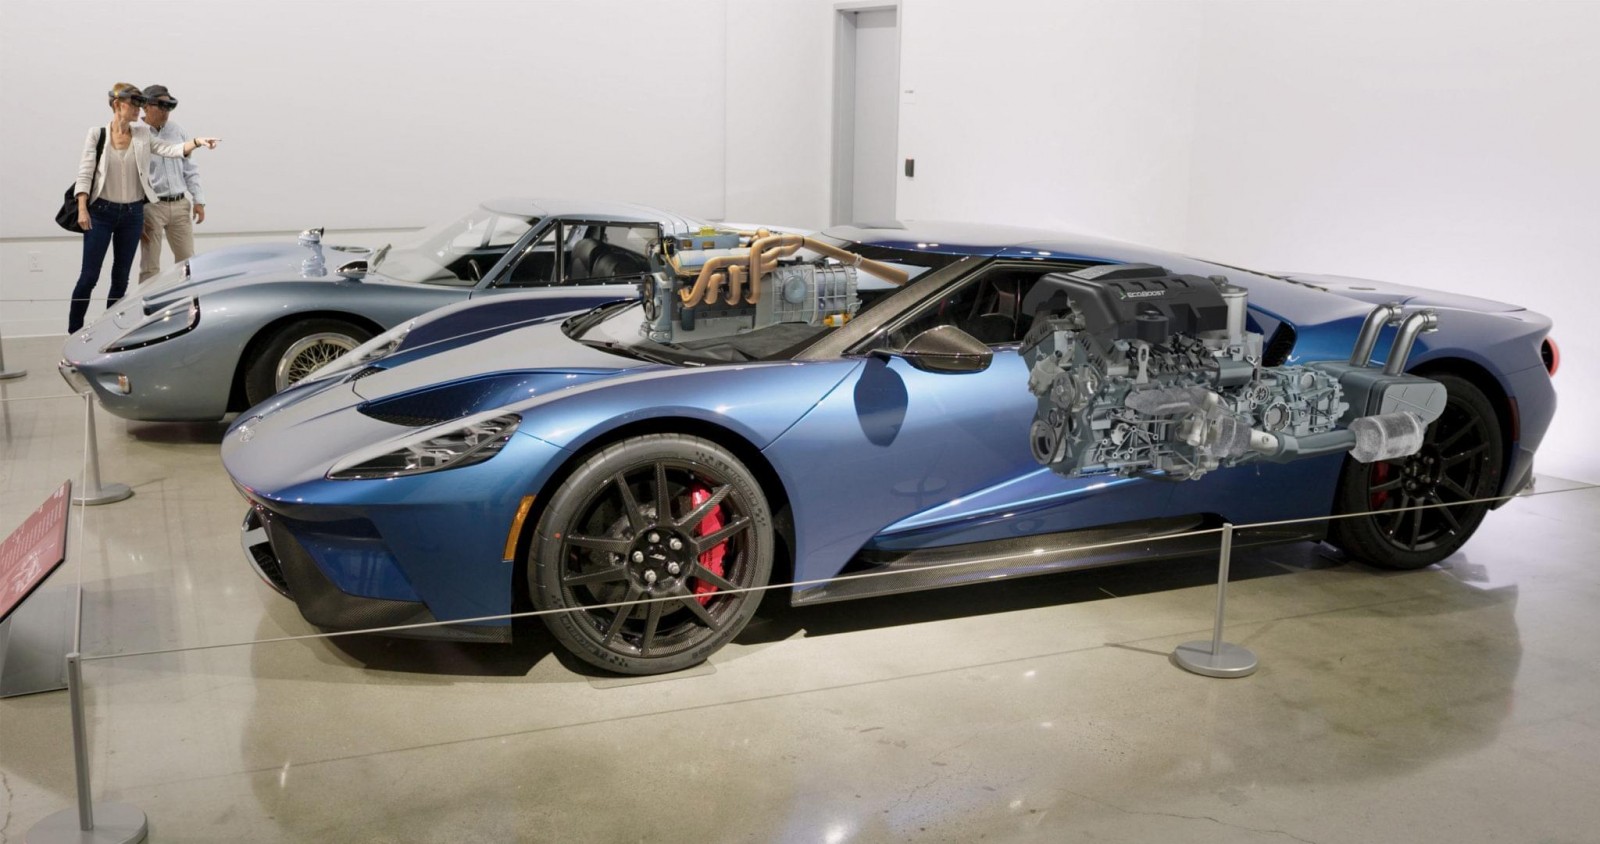 Автомобильный музей Петерсен демонстрирует выставку в смешанной реальности